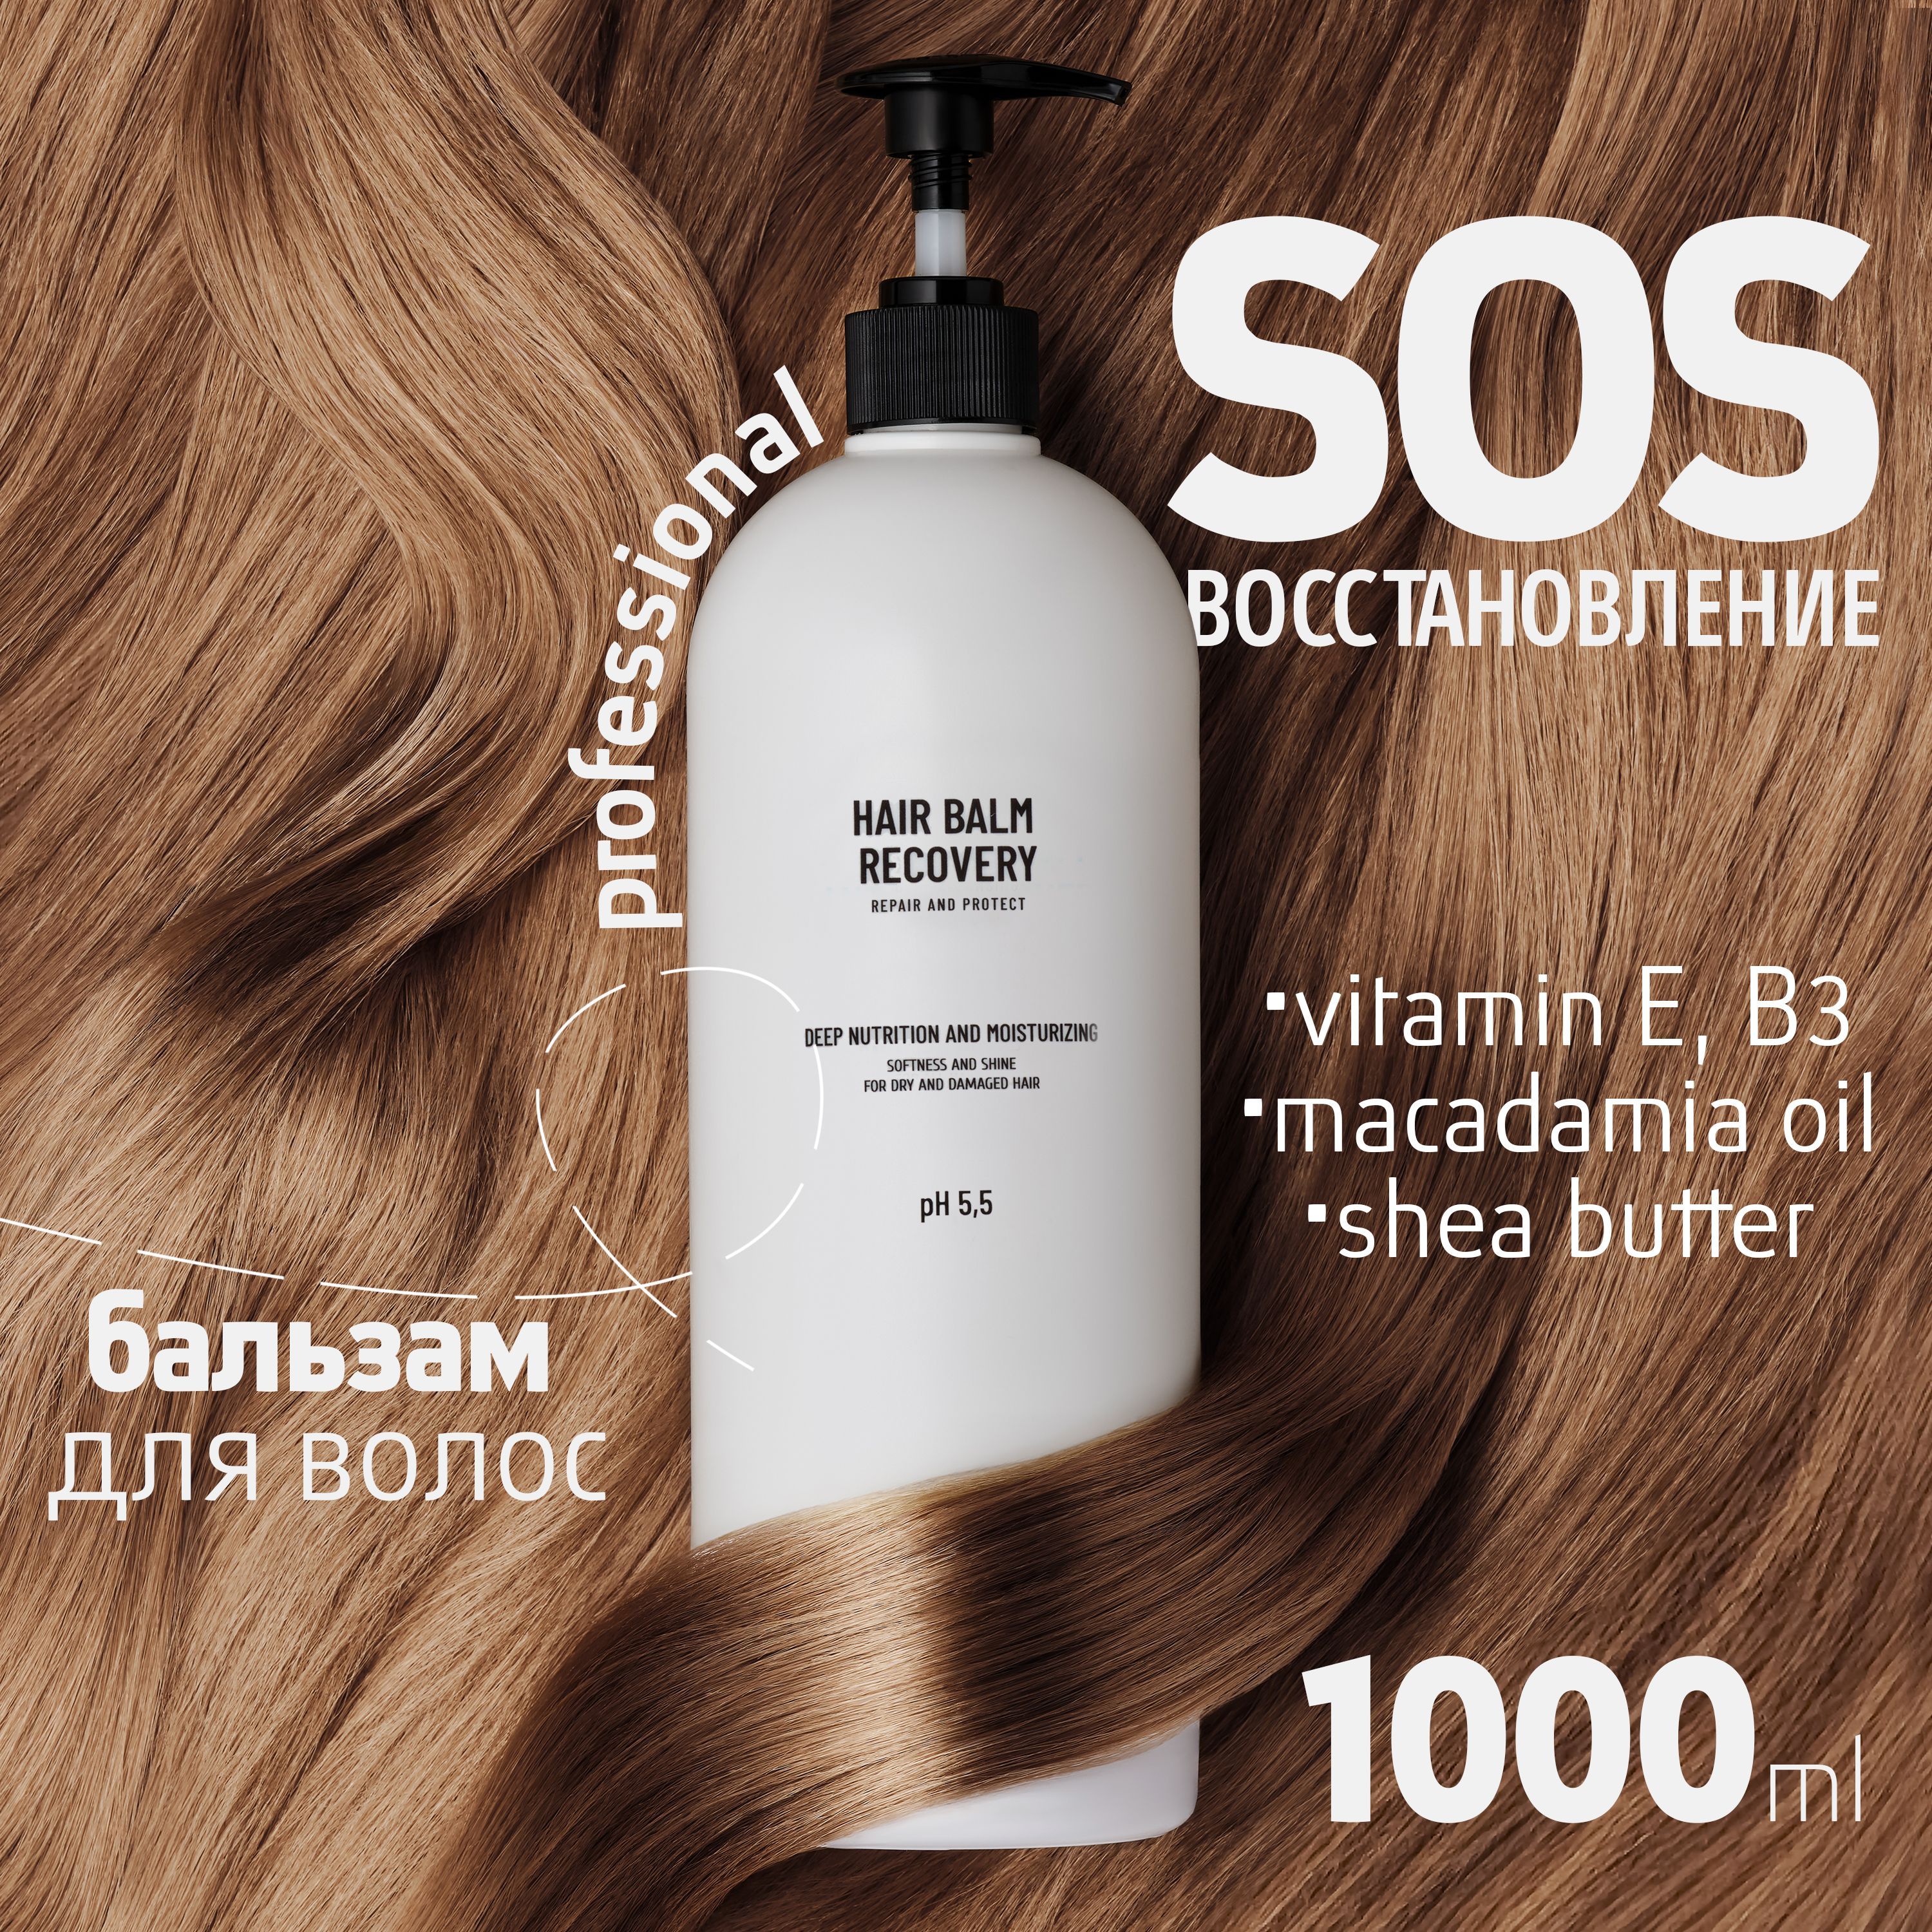 Бальзам для волос Fabrik Cosmetology SOS восстановление 1000 мл бальзам сильный иммунитет для поддержки иммунитета 250 мл